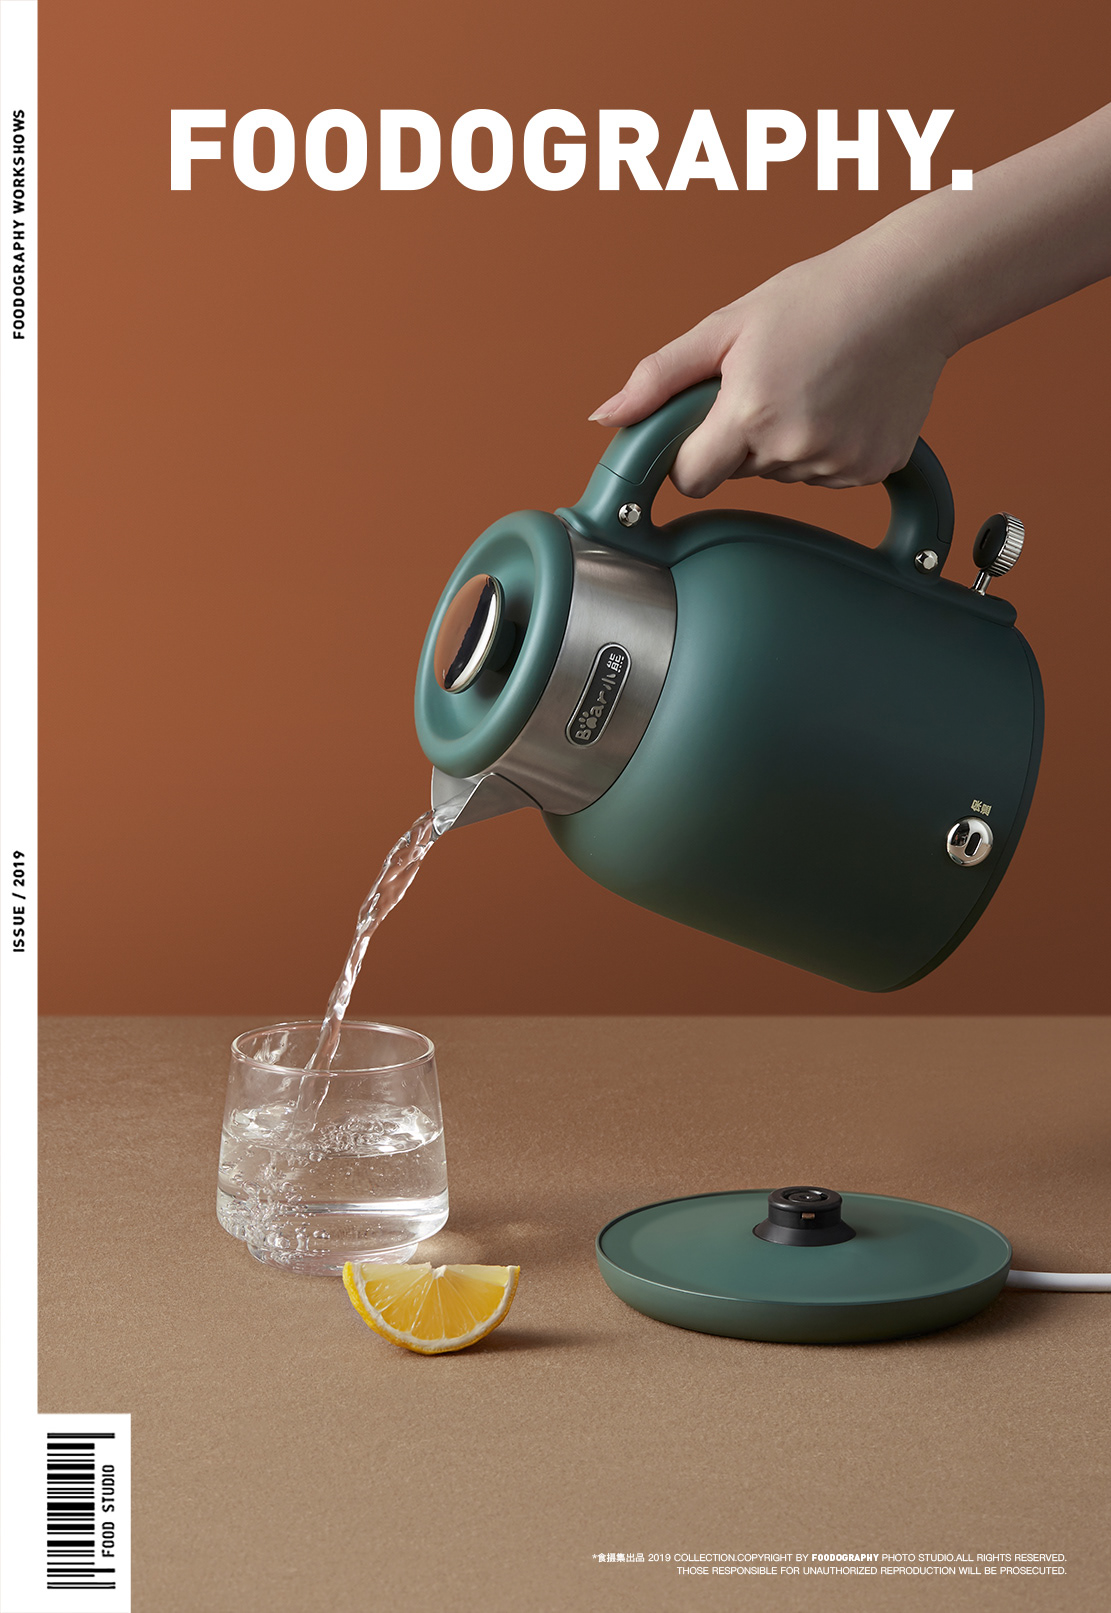 industrial design  kettle 产品摄影 厨房小家电 小家电摄影 工业摄影 水壶 电器摄影 美食摄影